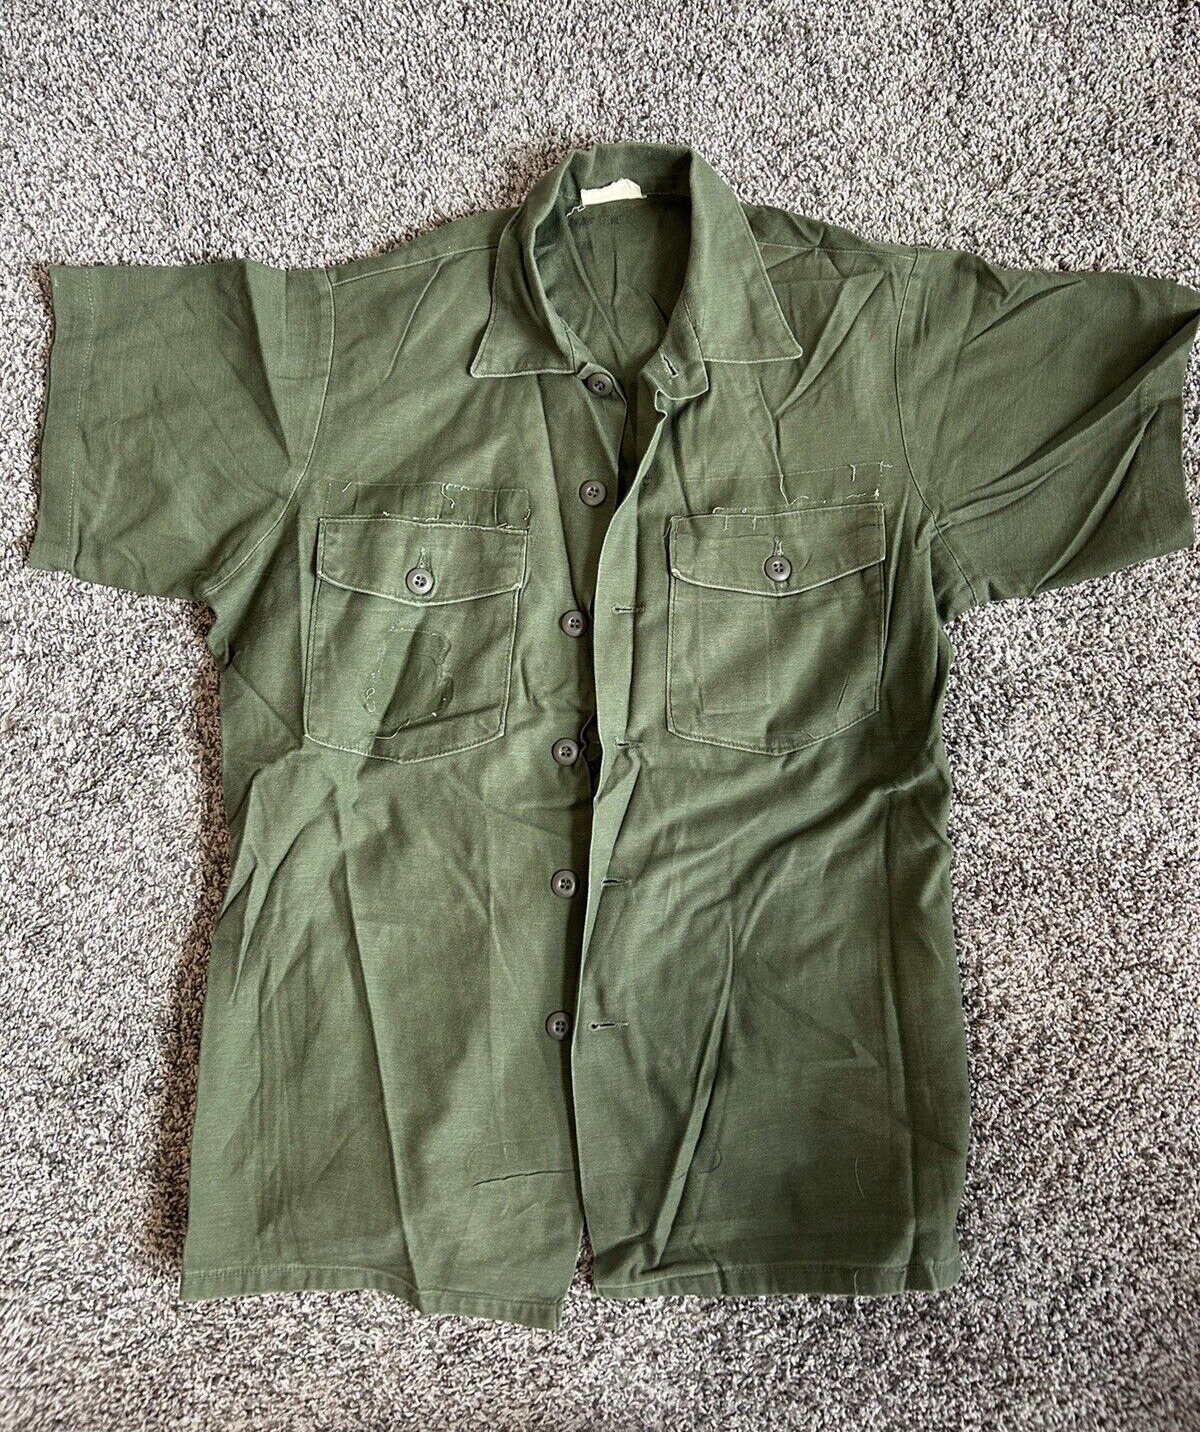 Vintage OG 107 Shirt Military Utility USAF Sateen Vietnam Short Sleeve Damaged